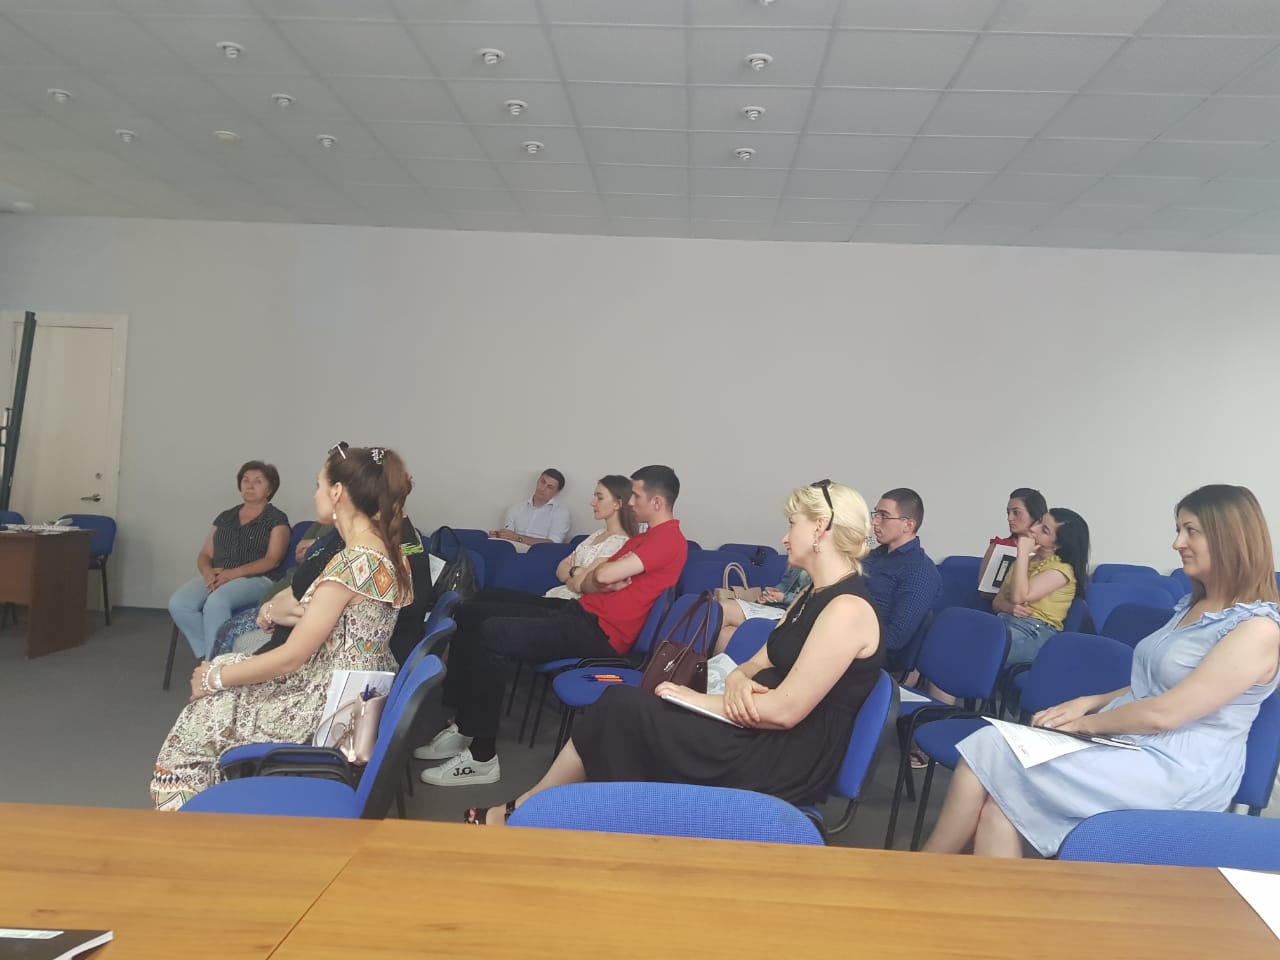 28 июня 2019 года Центром поддержки экспорта Республики Северная Осетия-Алания организован и проведен семинар «Эффективная деловая коммуникация для экспортеров»  образовательной программы Российского экспортного центра.